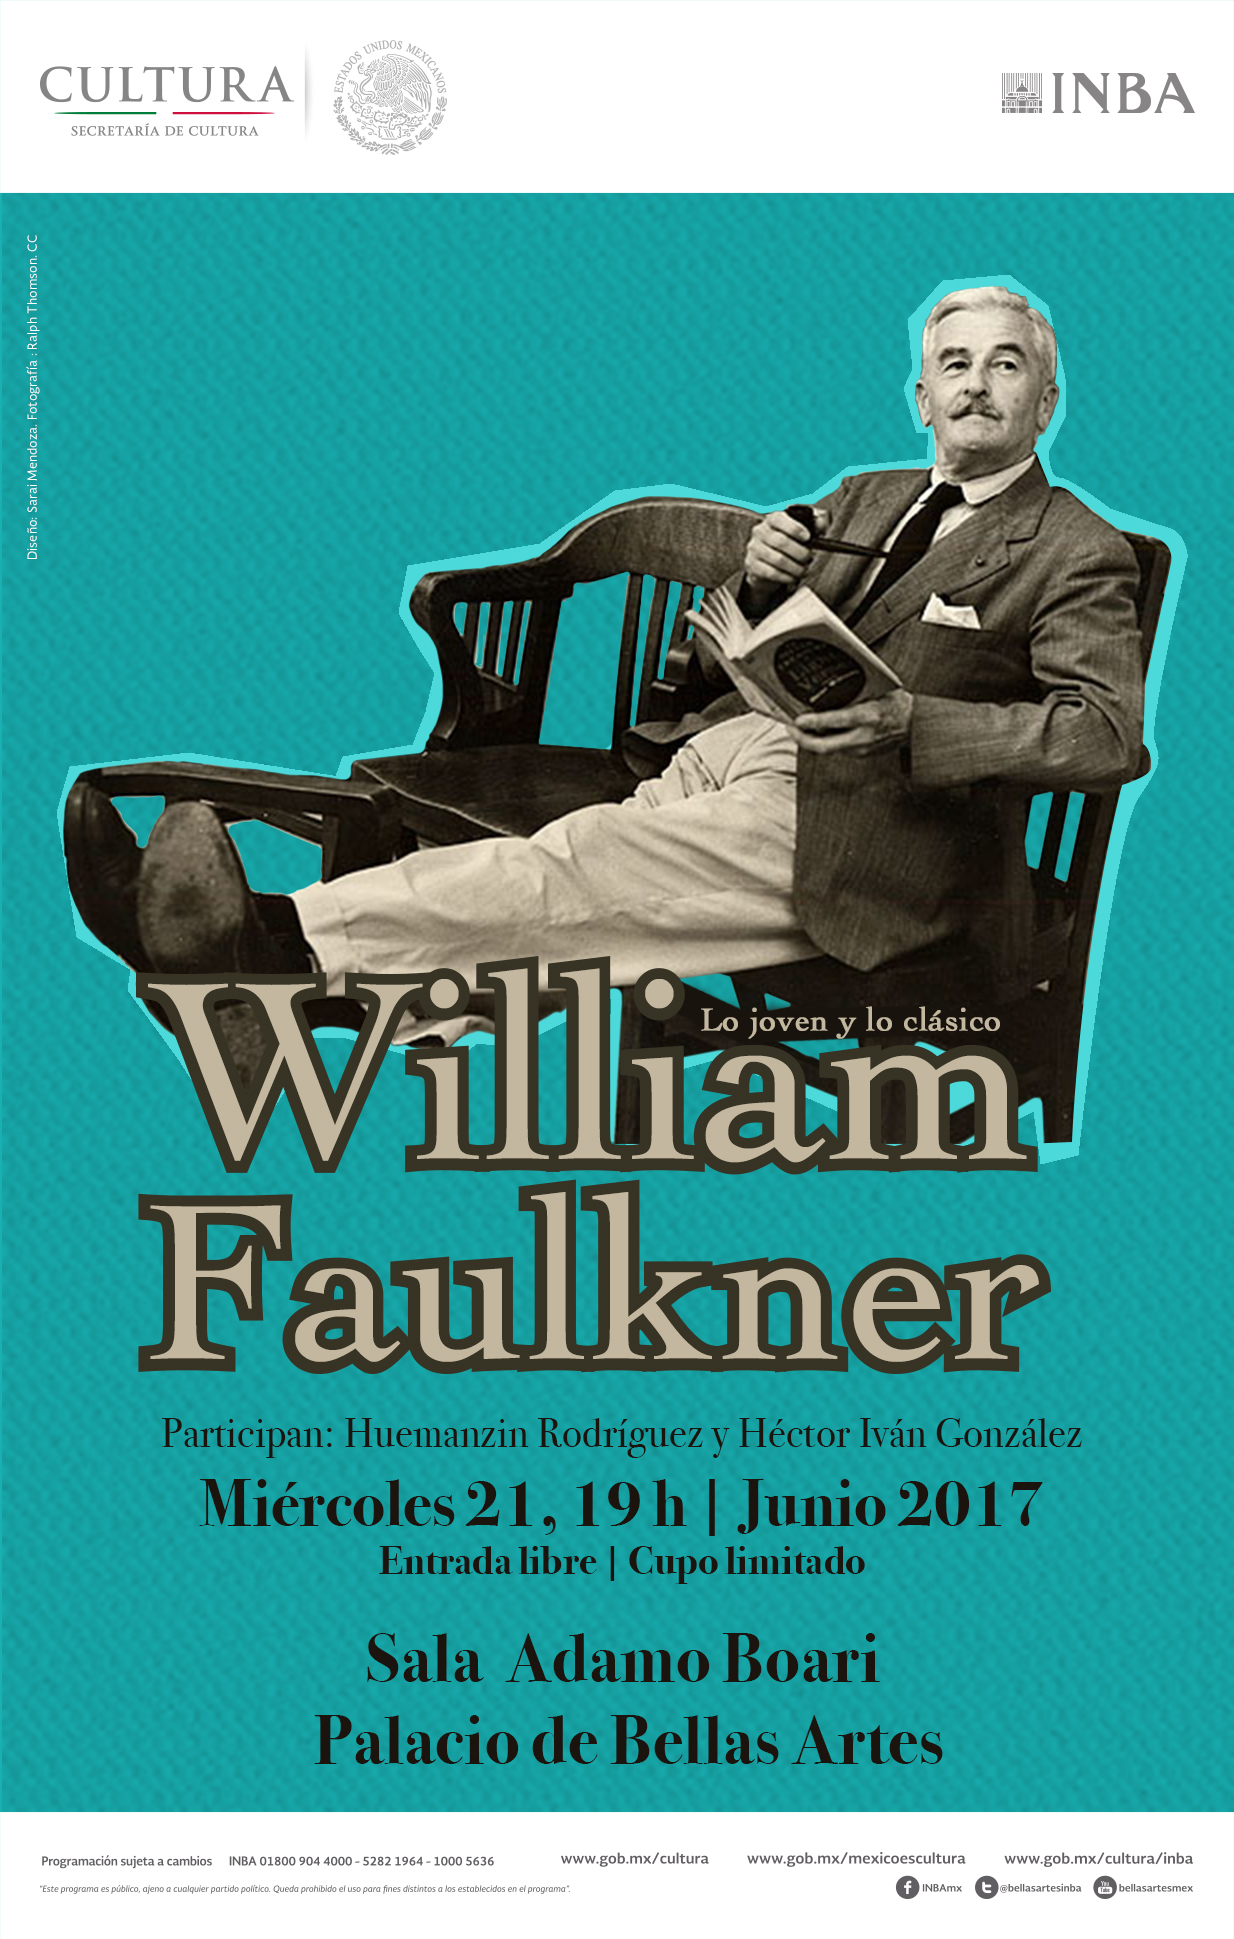 Se hablará sobre la obra de William Faulkner en el ciclo Lo joven y lo clásico